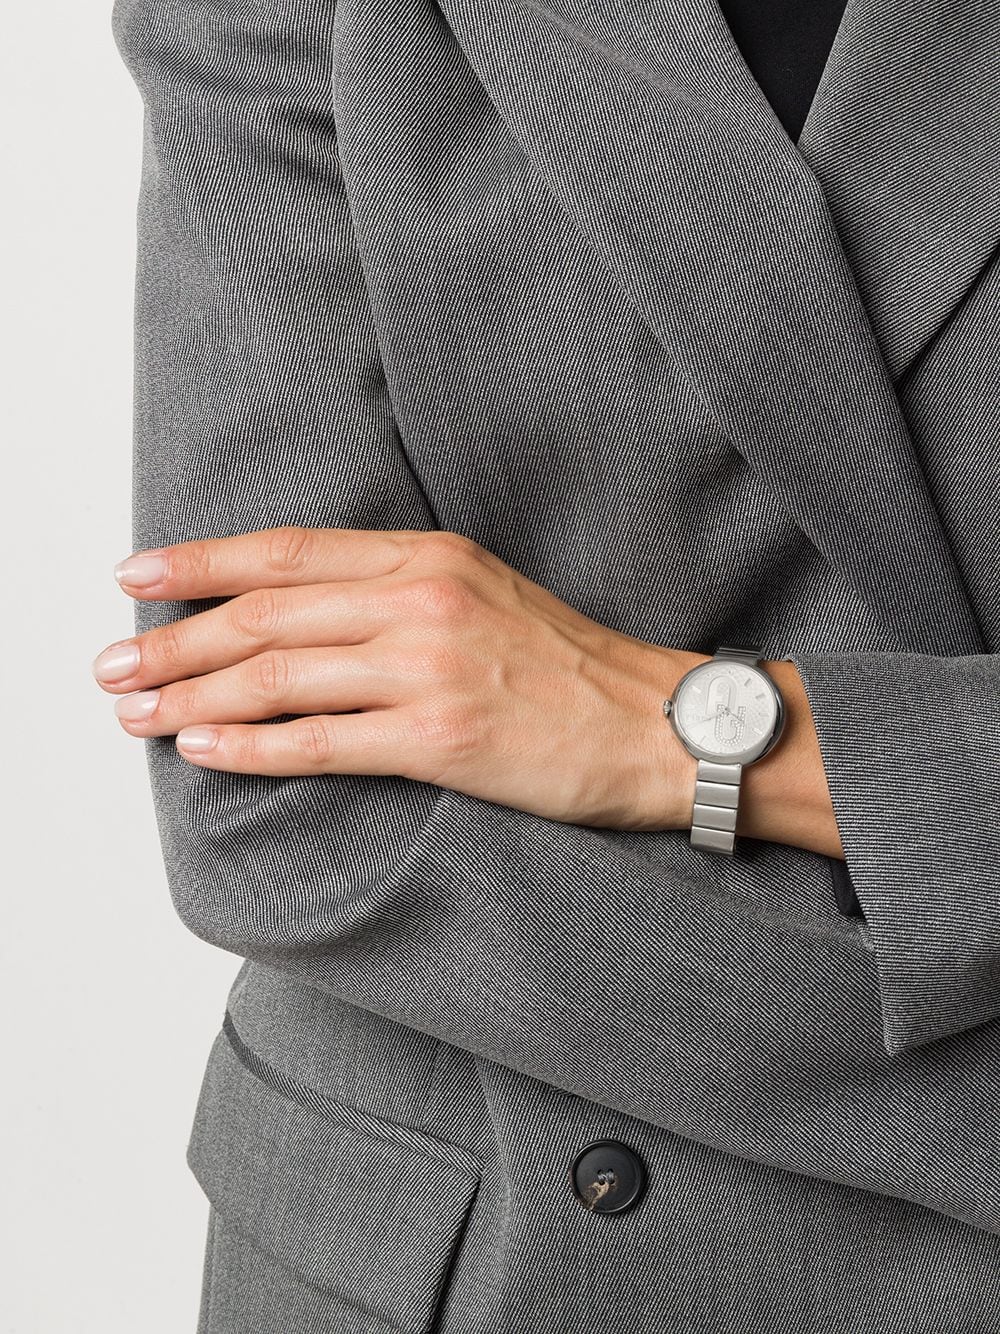 фото Furla наручные часы blubble с круглым корпусом